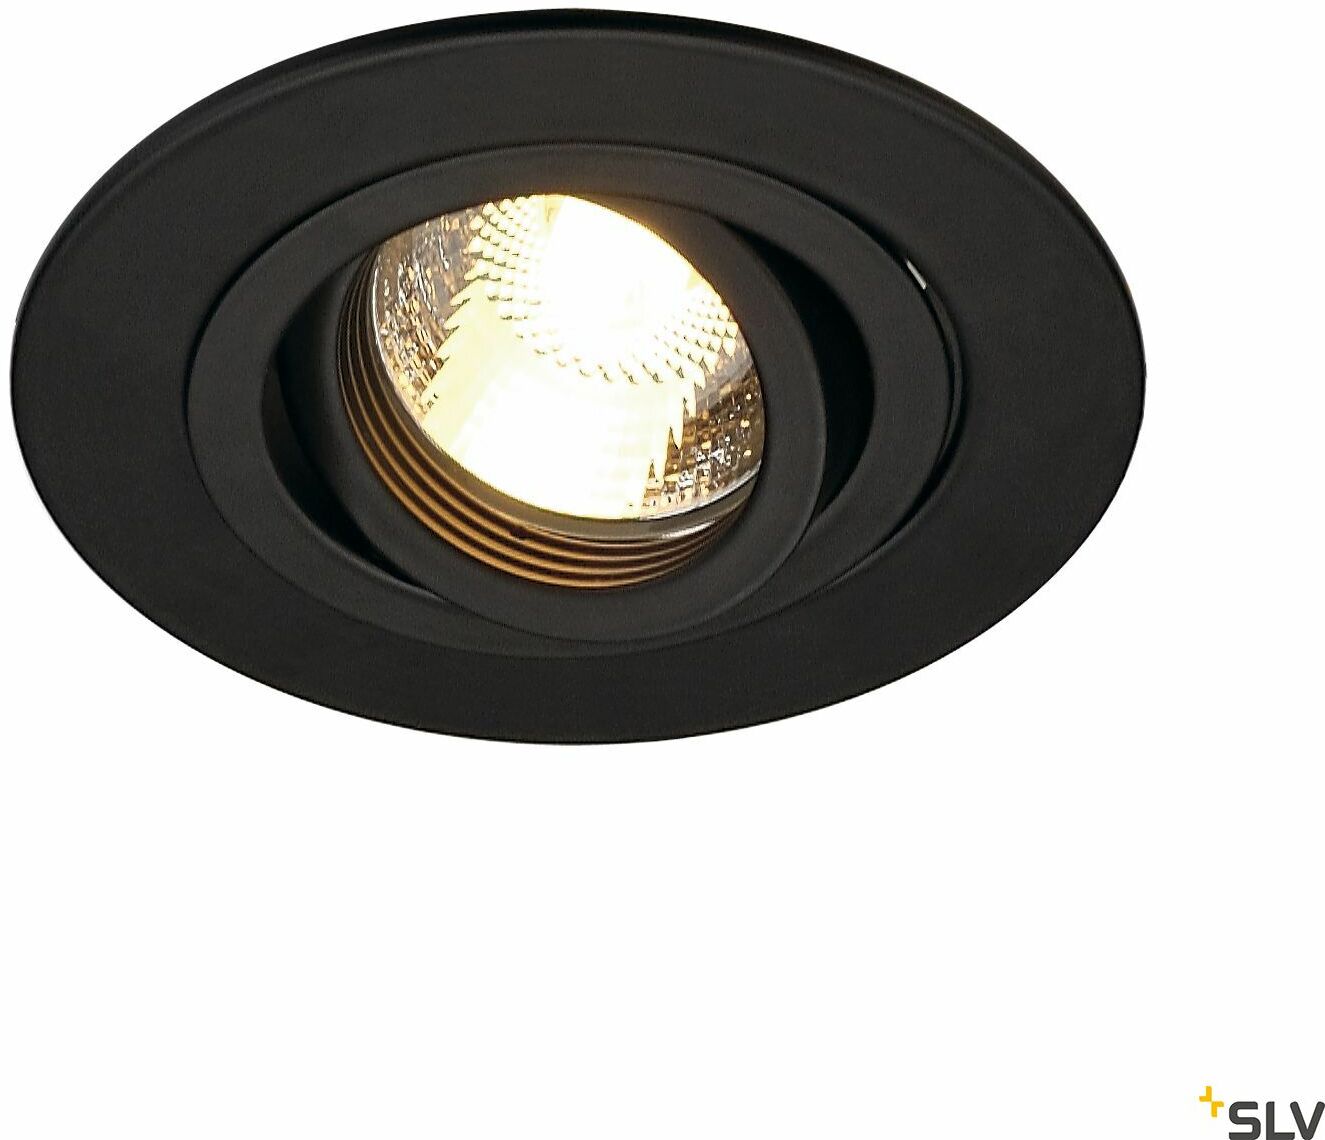 NEW TRIA 78 XL, QPAR51, lampa sufitowa do wbudowania, okrągła, średnica oprawy, 11 cm, gł. 10,2, otwór mont. 7,8 cm, kolor czarny